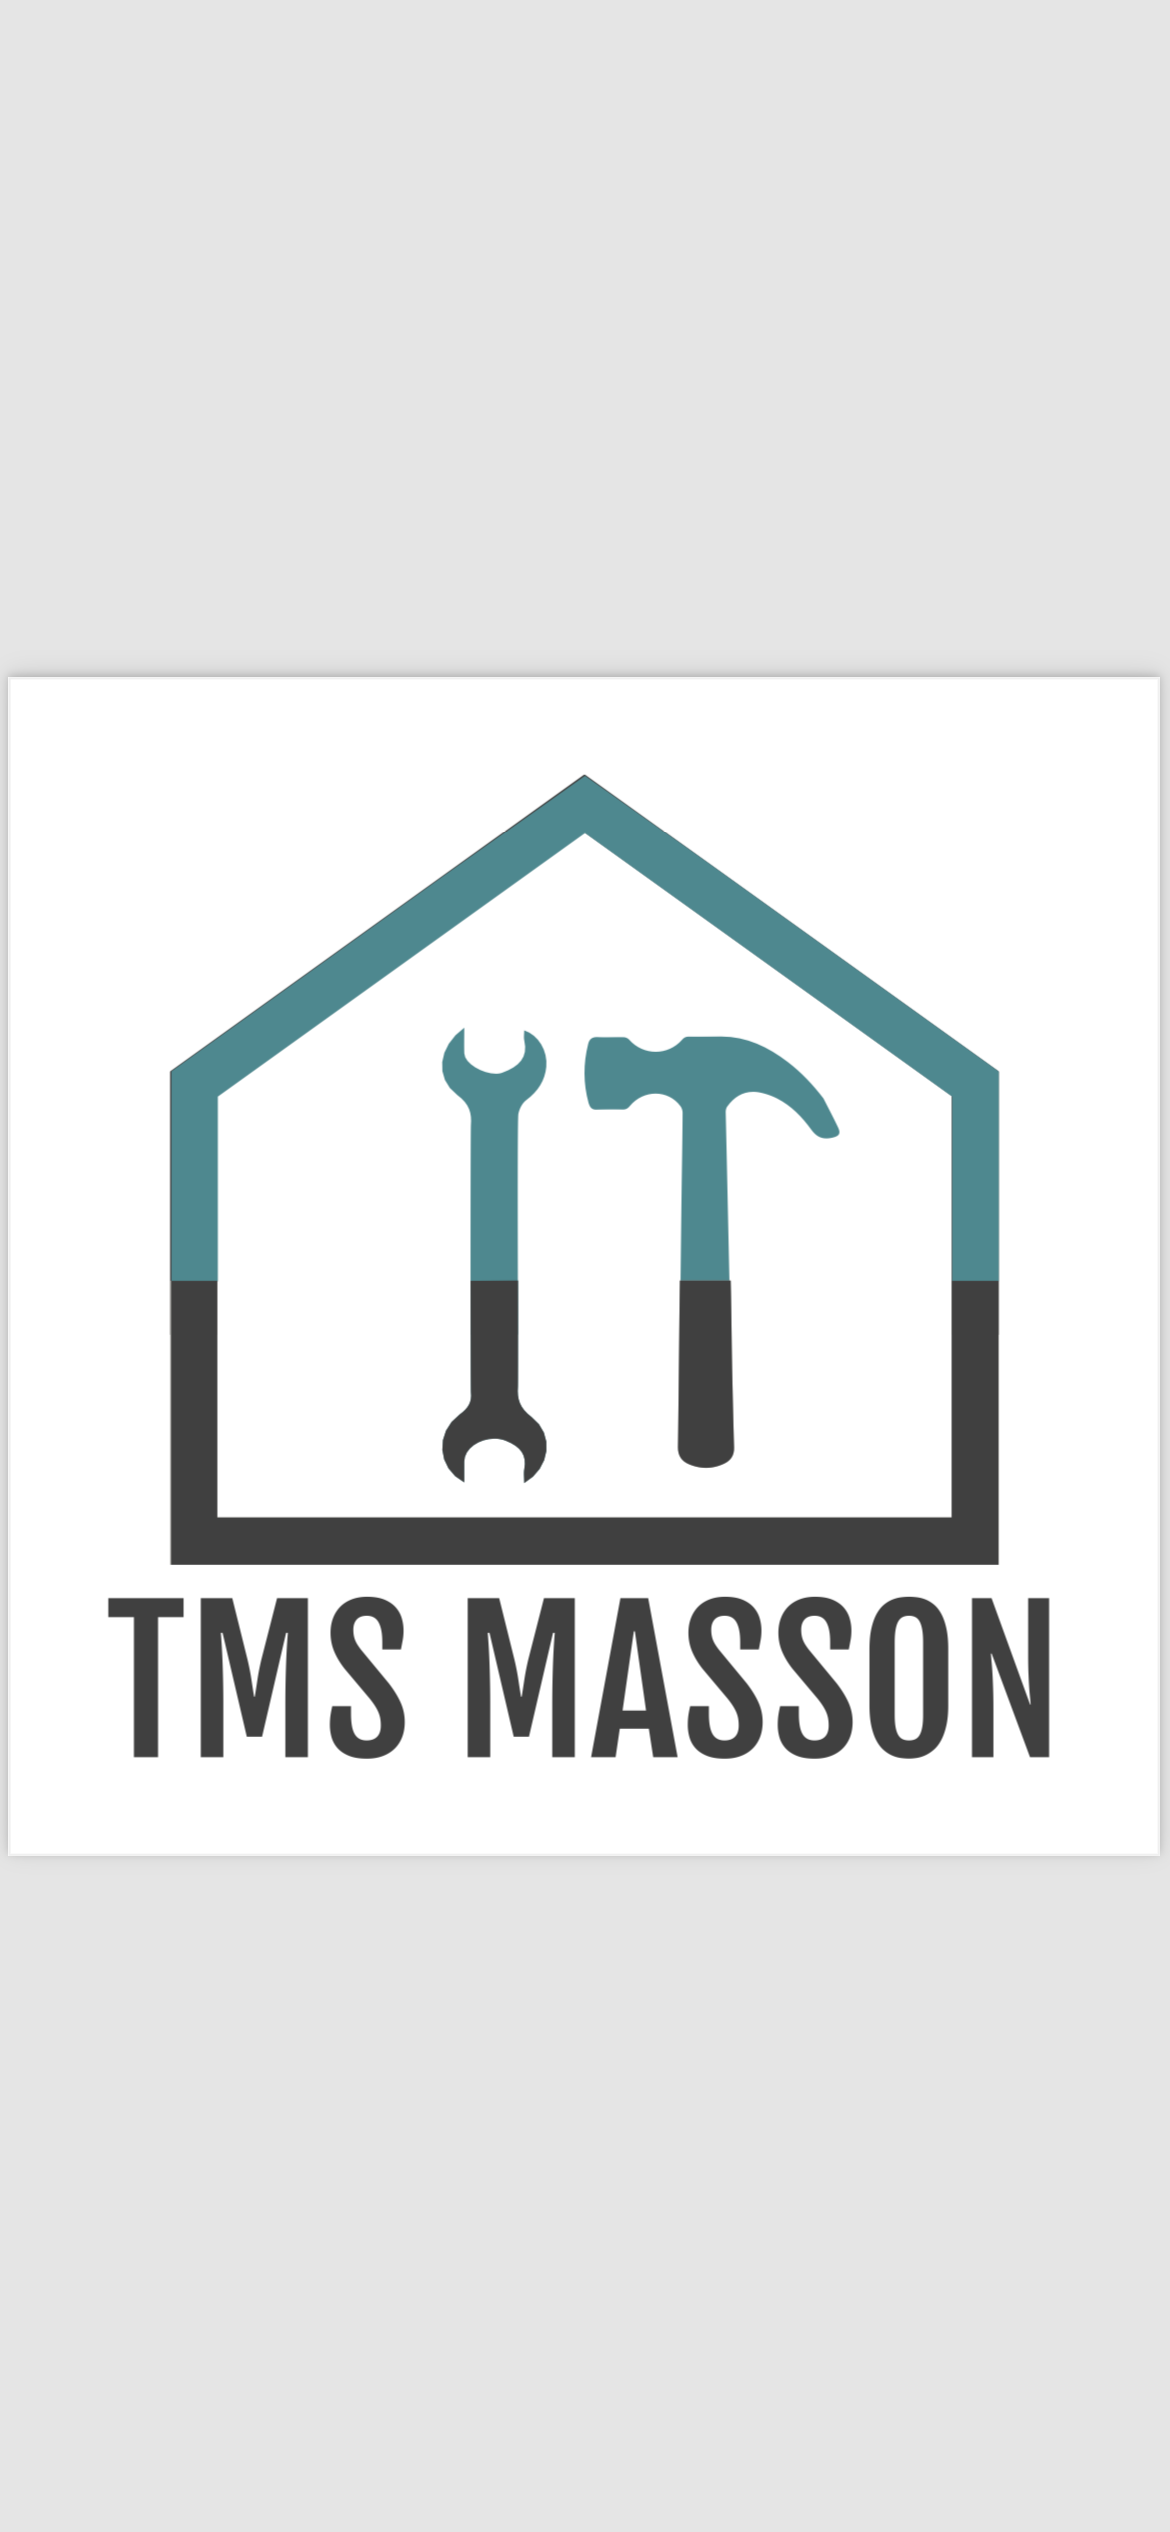 Logo de Tms masson, société de travaux en Création de jardins, pelouses et de parcs